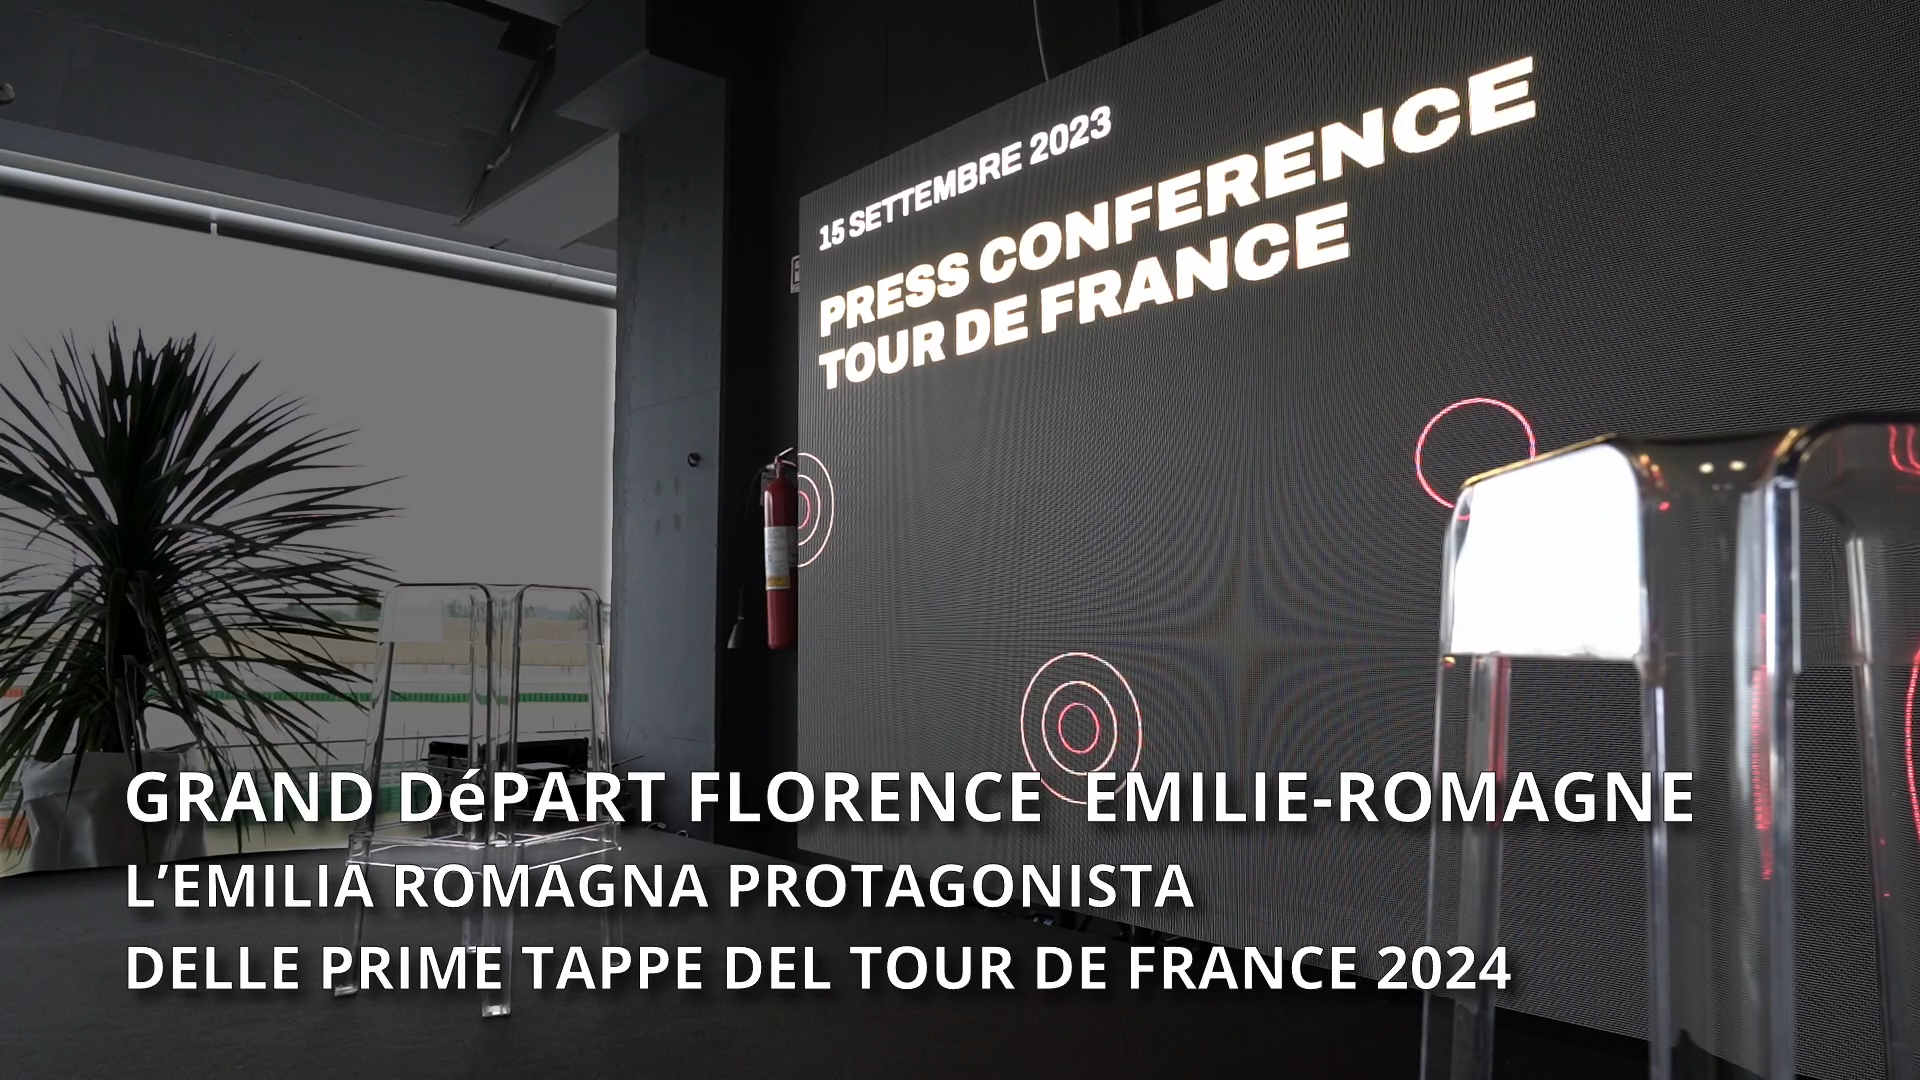 Grand Depàrt Florence Emilie-Romagne: l’Emilia-Romagna protagonista delle prime tappe del Tour de France 2024